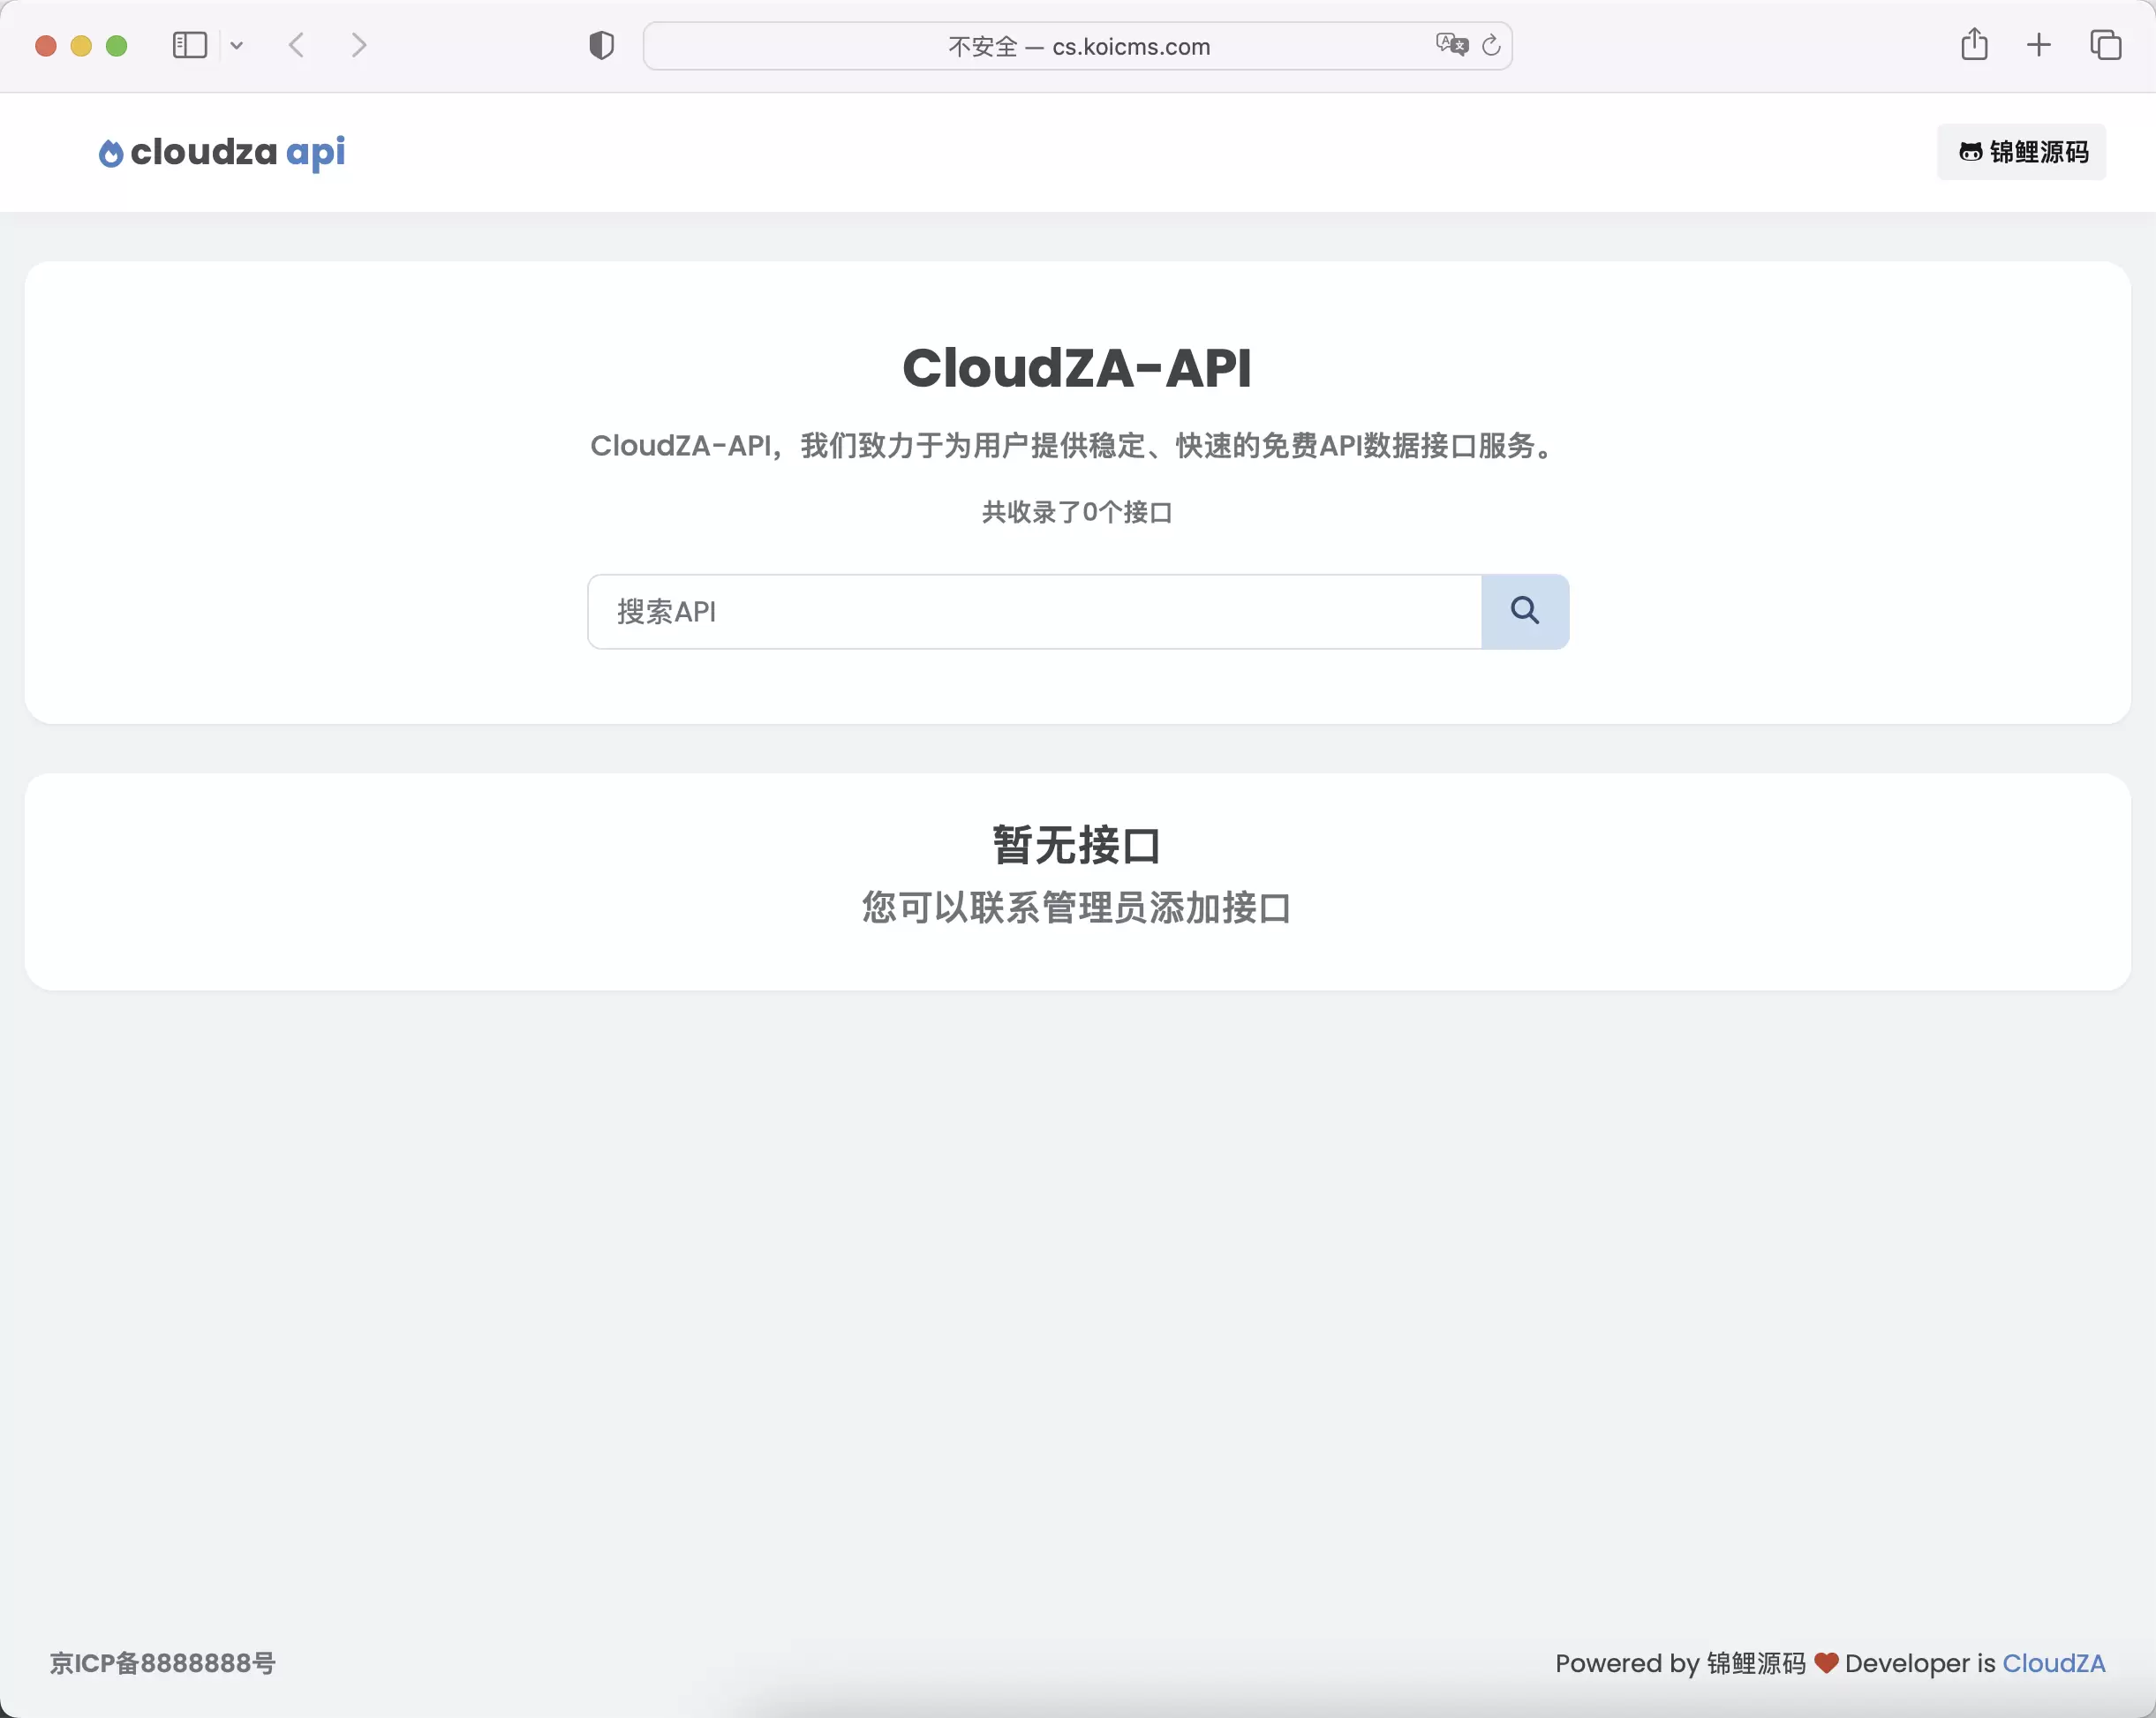 锦鲤已测|cloudZA-API开源的api接口合集整理网站 网站源码 第1张